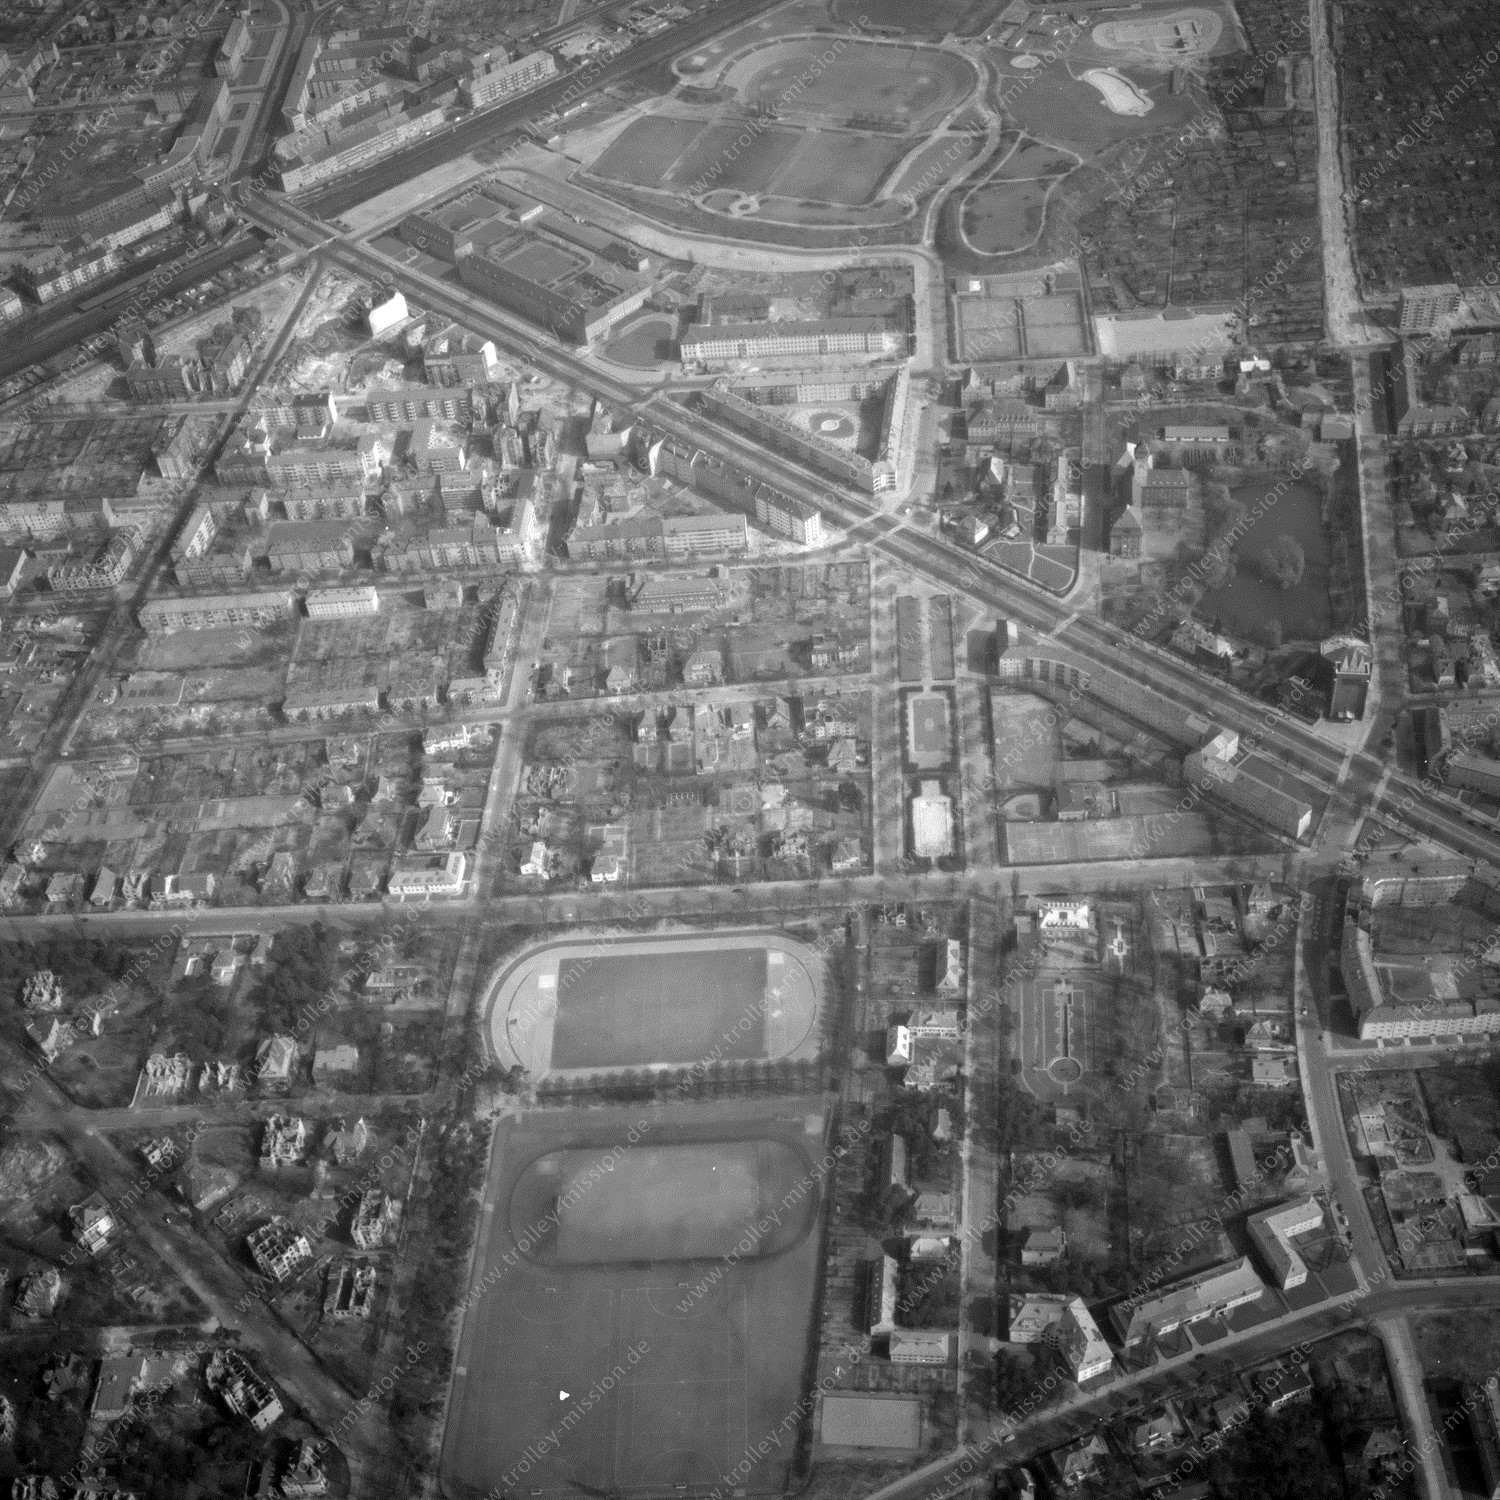 Alte Fotos und Luftbilder von Berlin - Luftbildaufnahme Nr. 02 - Historische Luftaufnahmen von West-Berlin aus dem Jahr 1954 - Flugstrecke Alpha